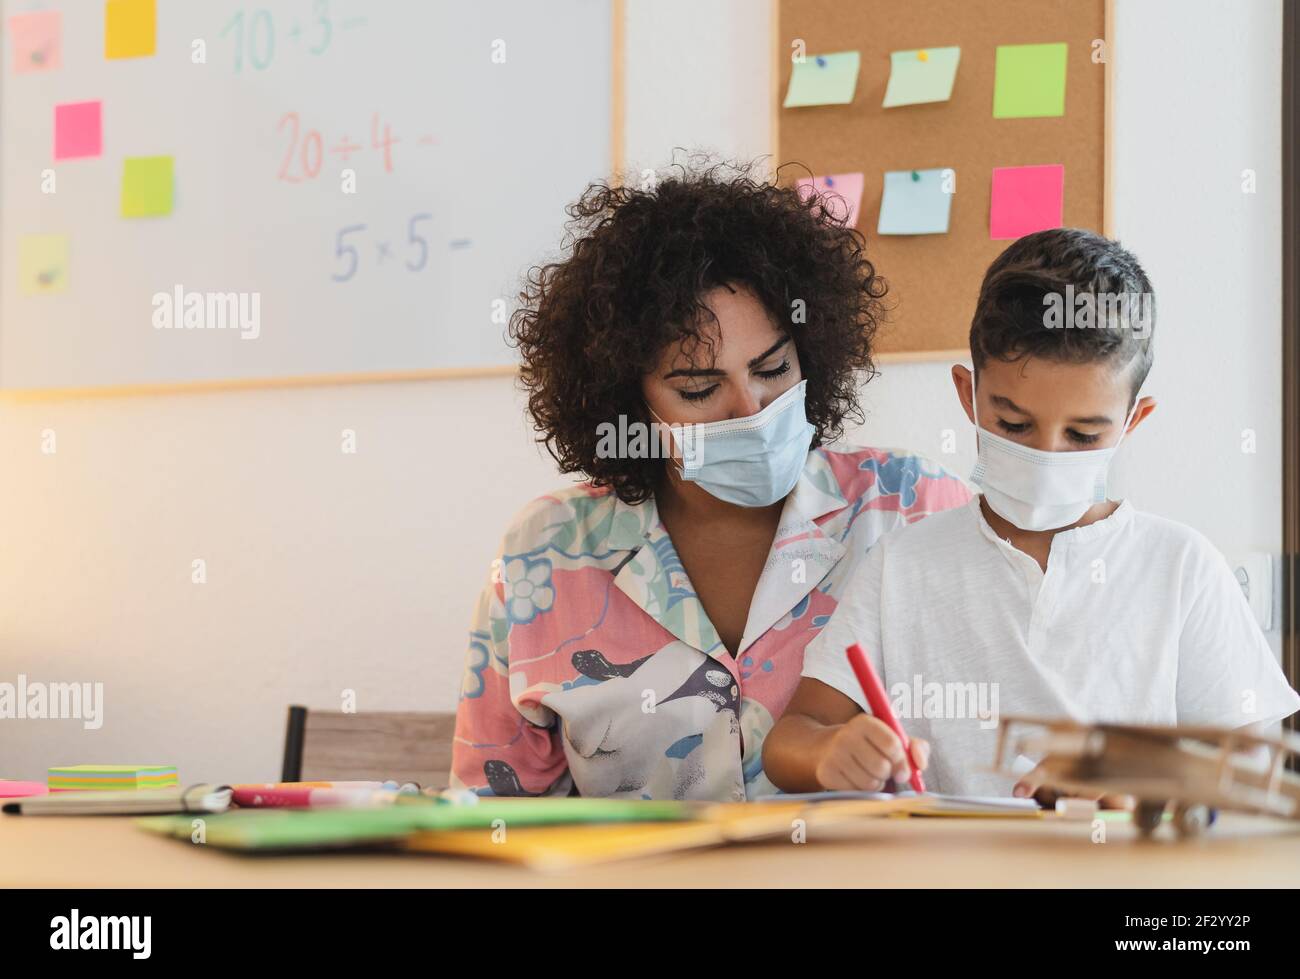 Lehrerin Frau mit Kind trägt Gesichtsschutzmaske in der Vorschule Präsenzunterricht während der Corona-Virus-Pandemie - Gesundheits- und Bildungskonzept Stockfoto